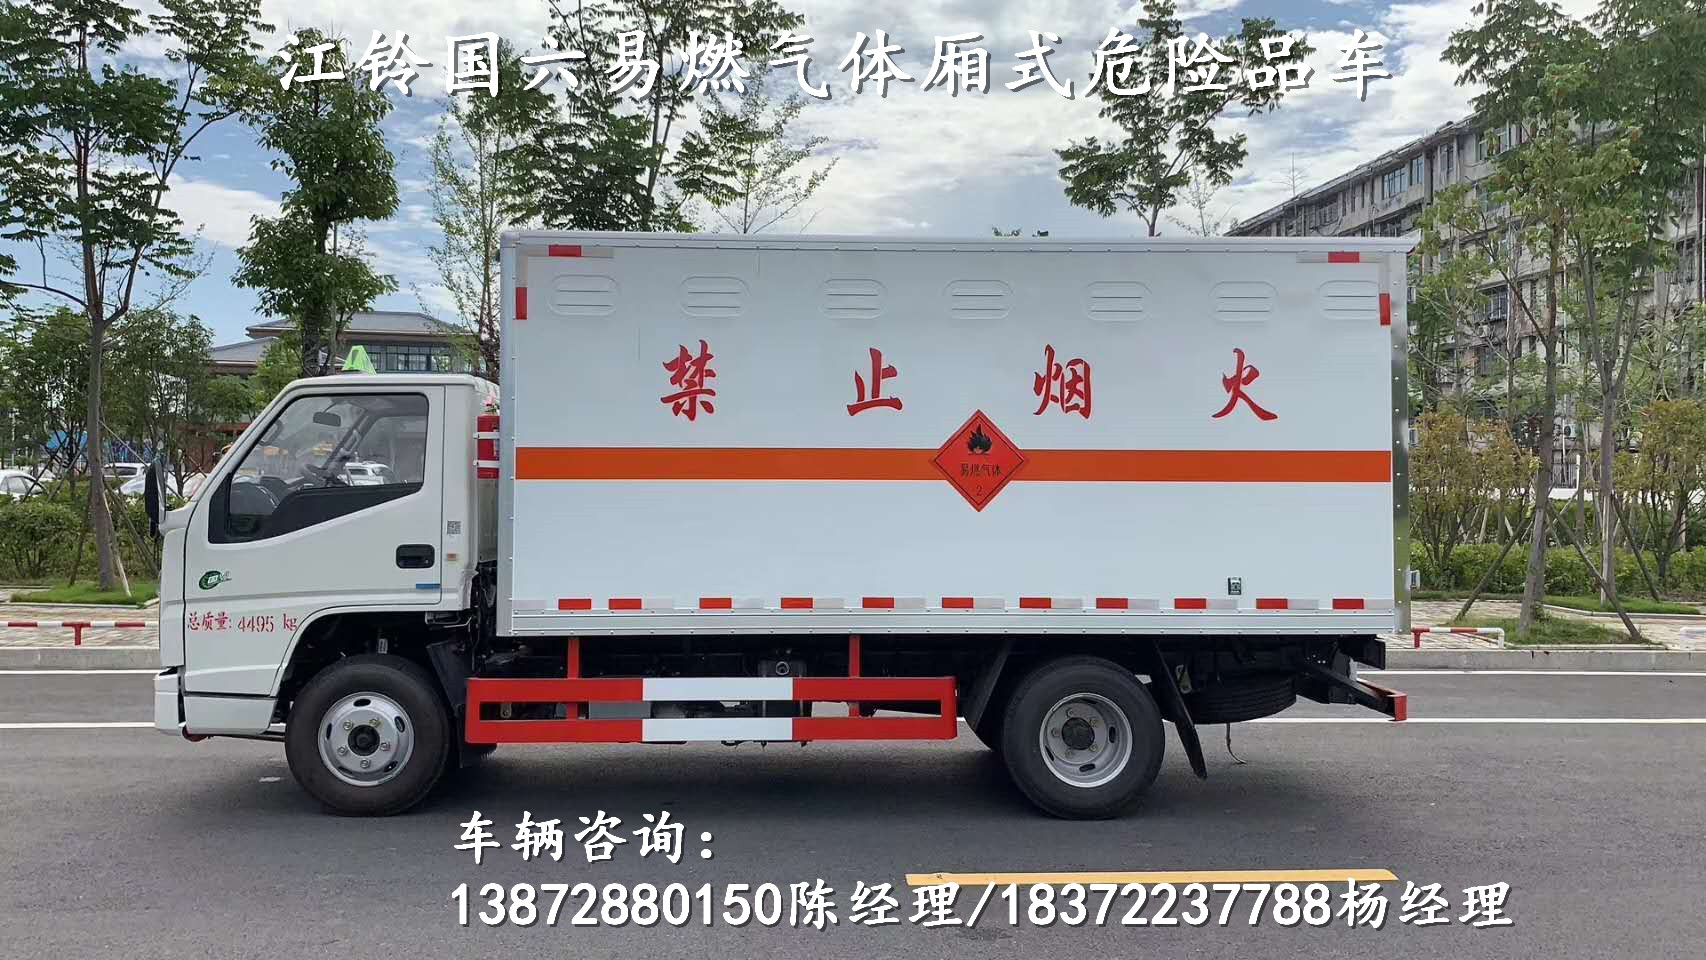 郭楞自治州东风锦程国六液化气瓶运输车具体规定